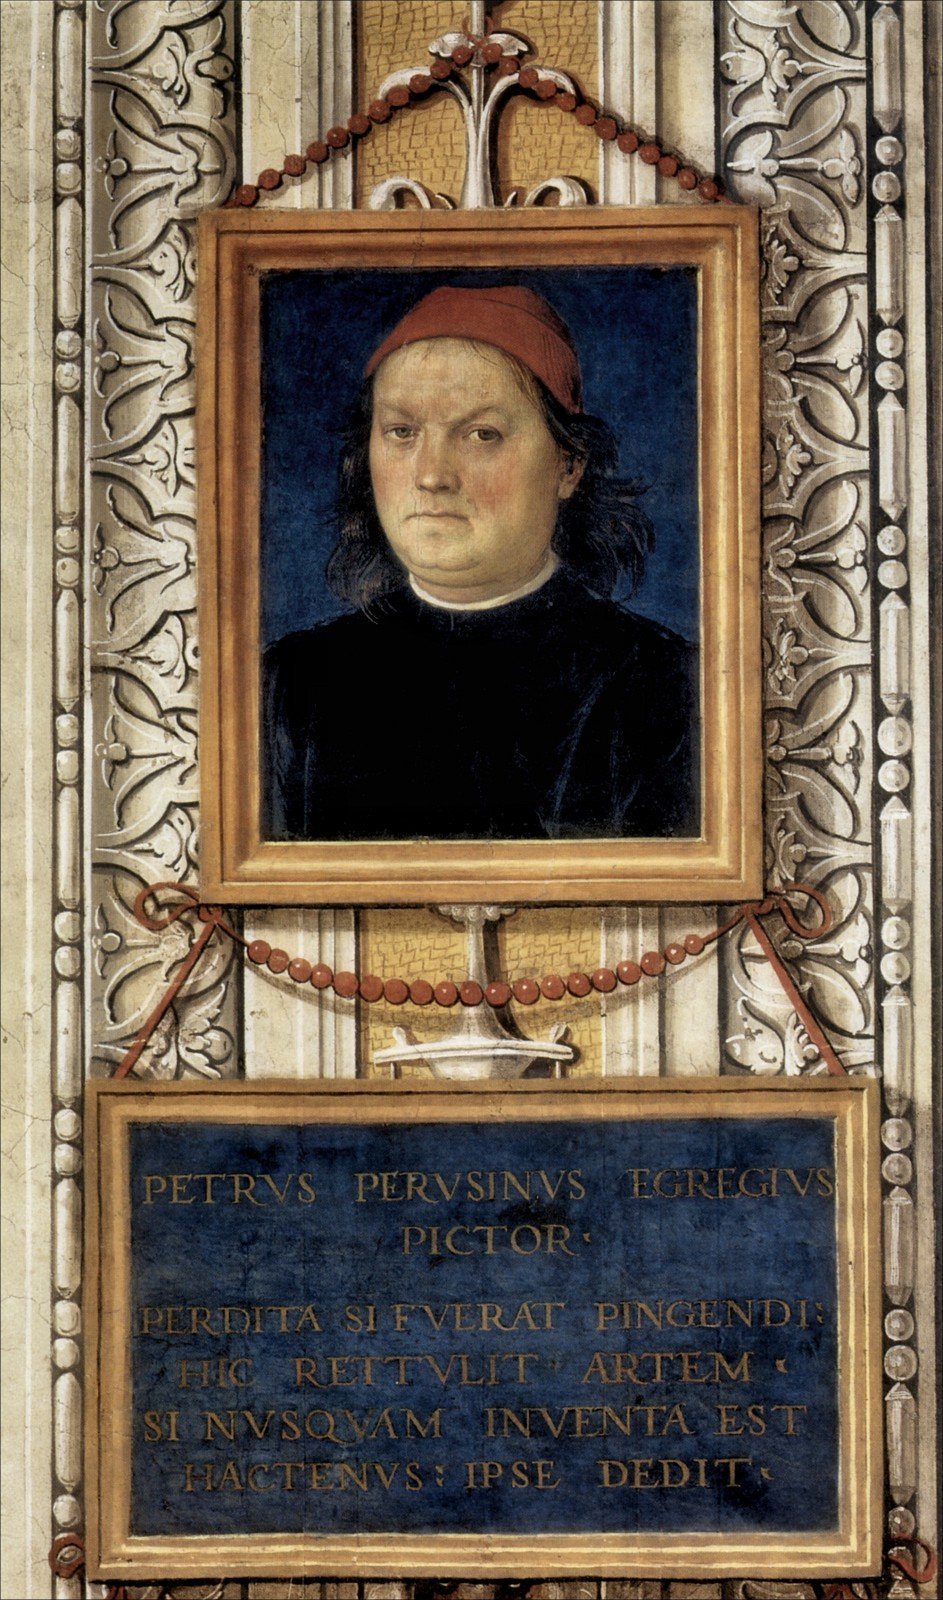 Perugino, "Self portrait", 1496-1500, fresco, Collegio del Cambio, Perugia